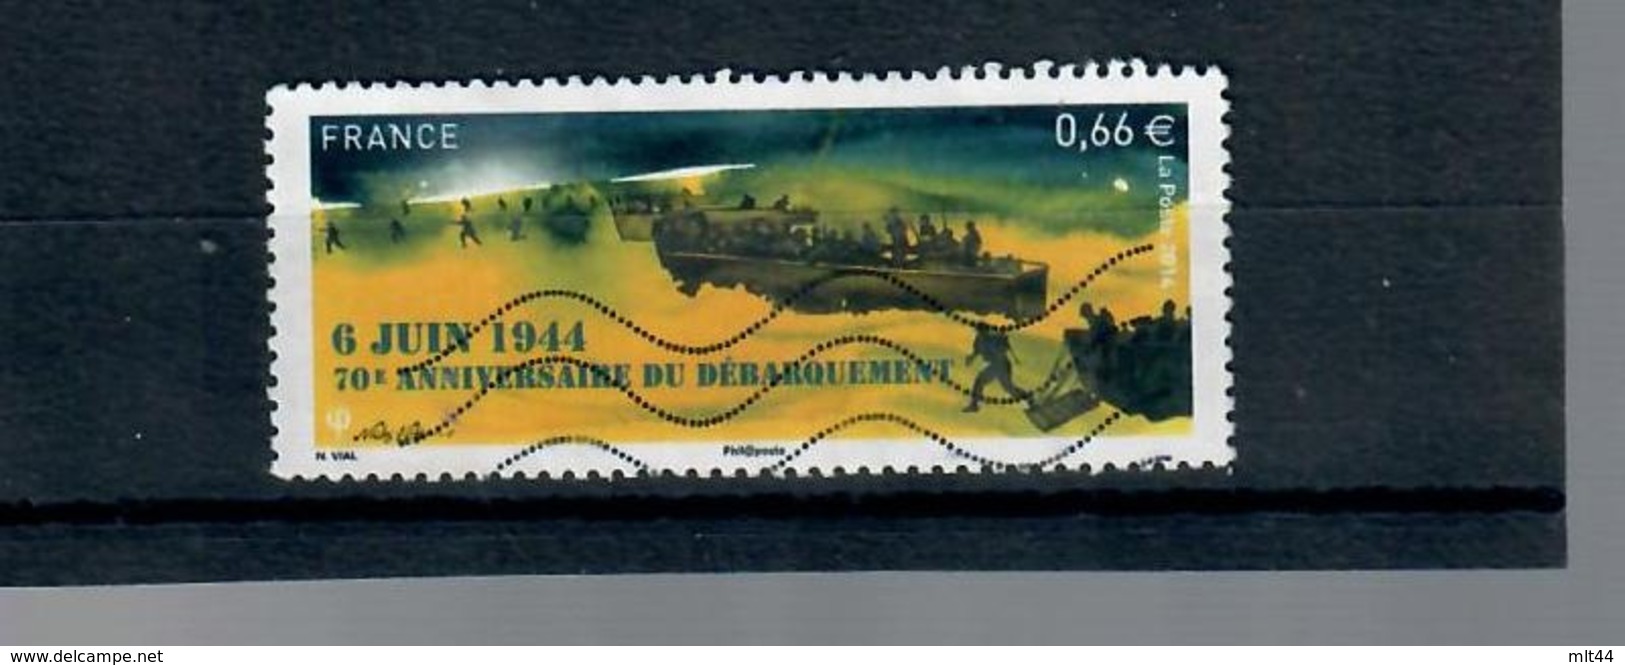 3yt-4863-70ème Anniversaire Du Debarquement - Used Stamps